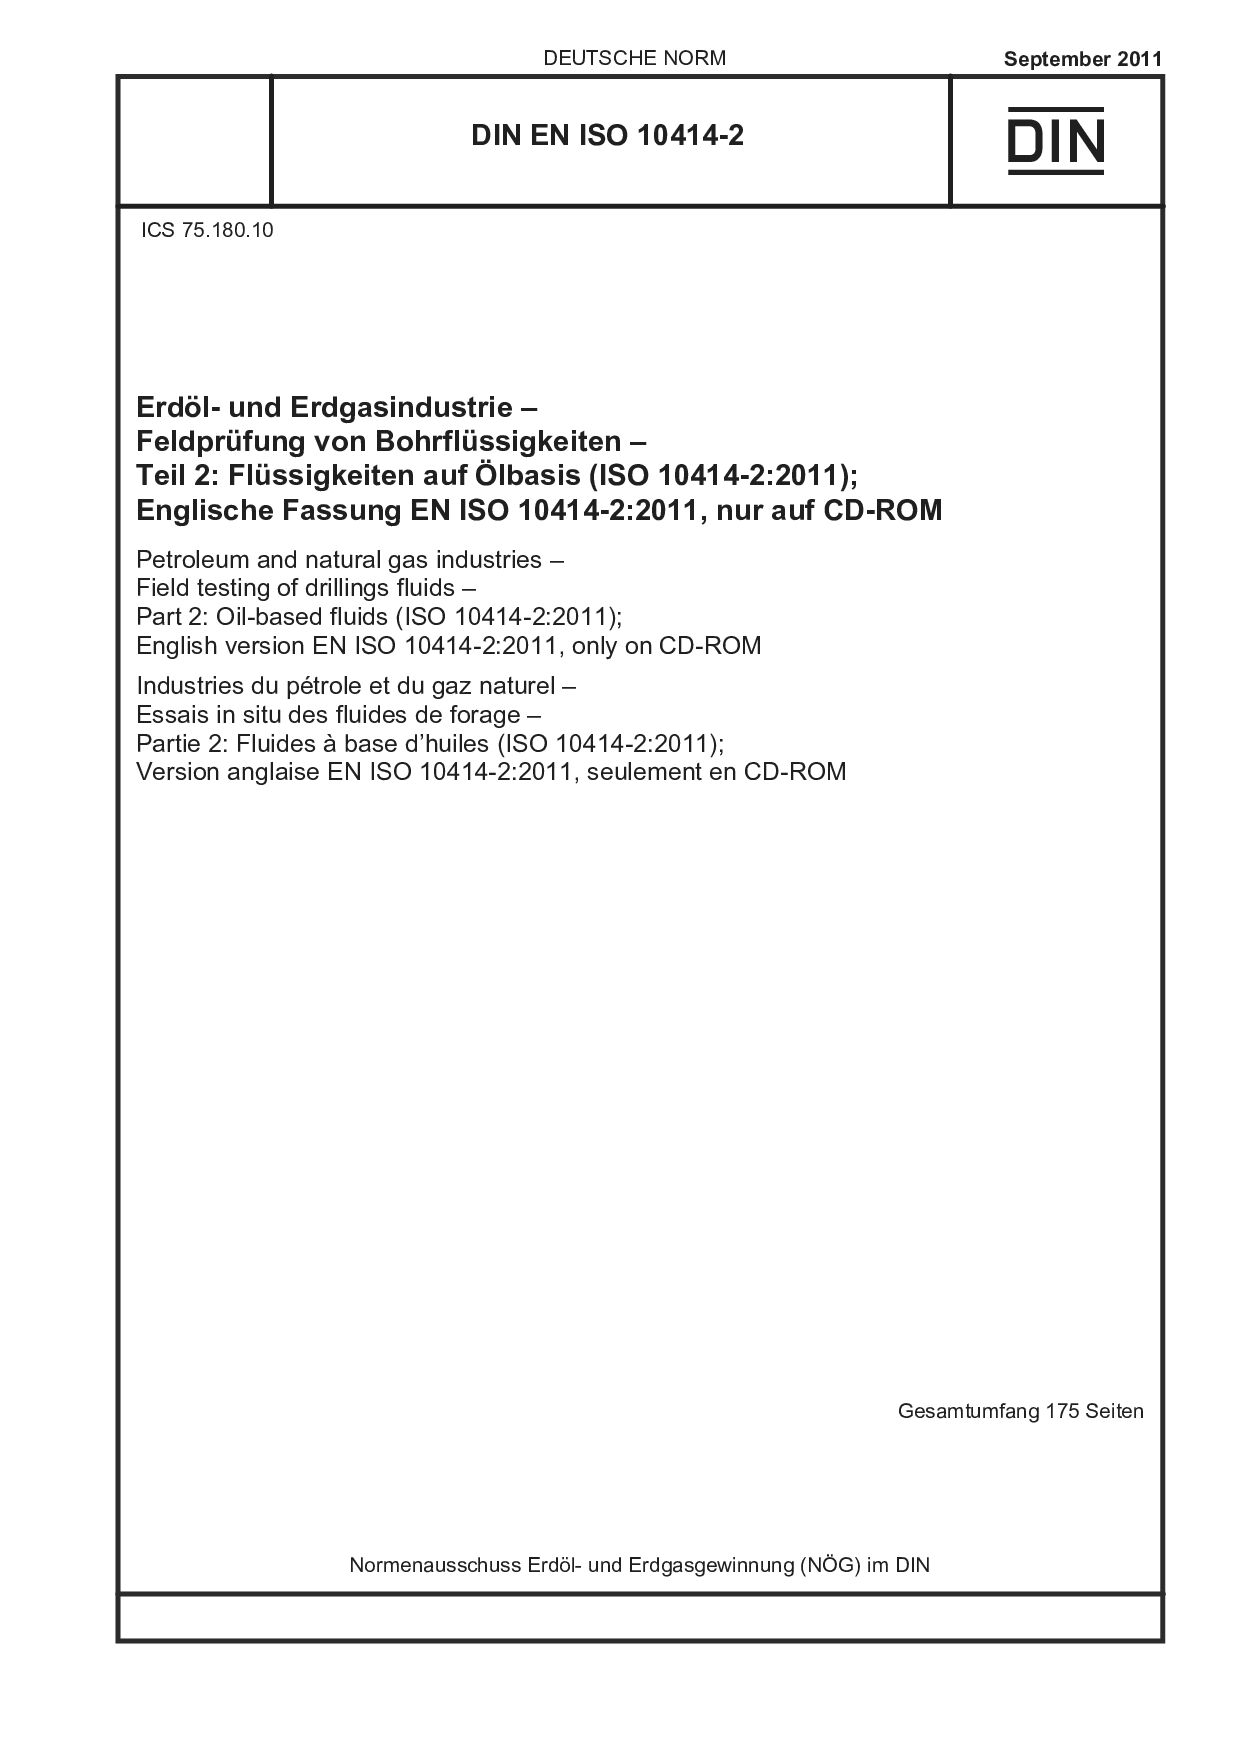 DIN EN ISO 10414-2:2011